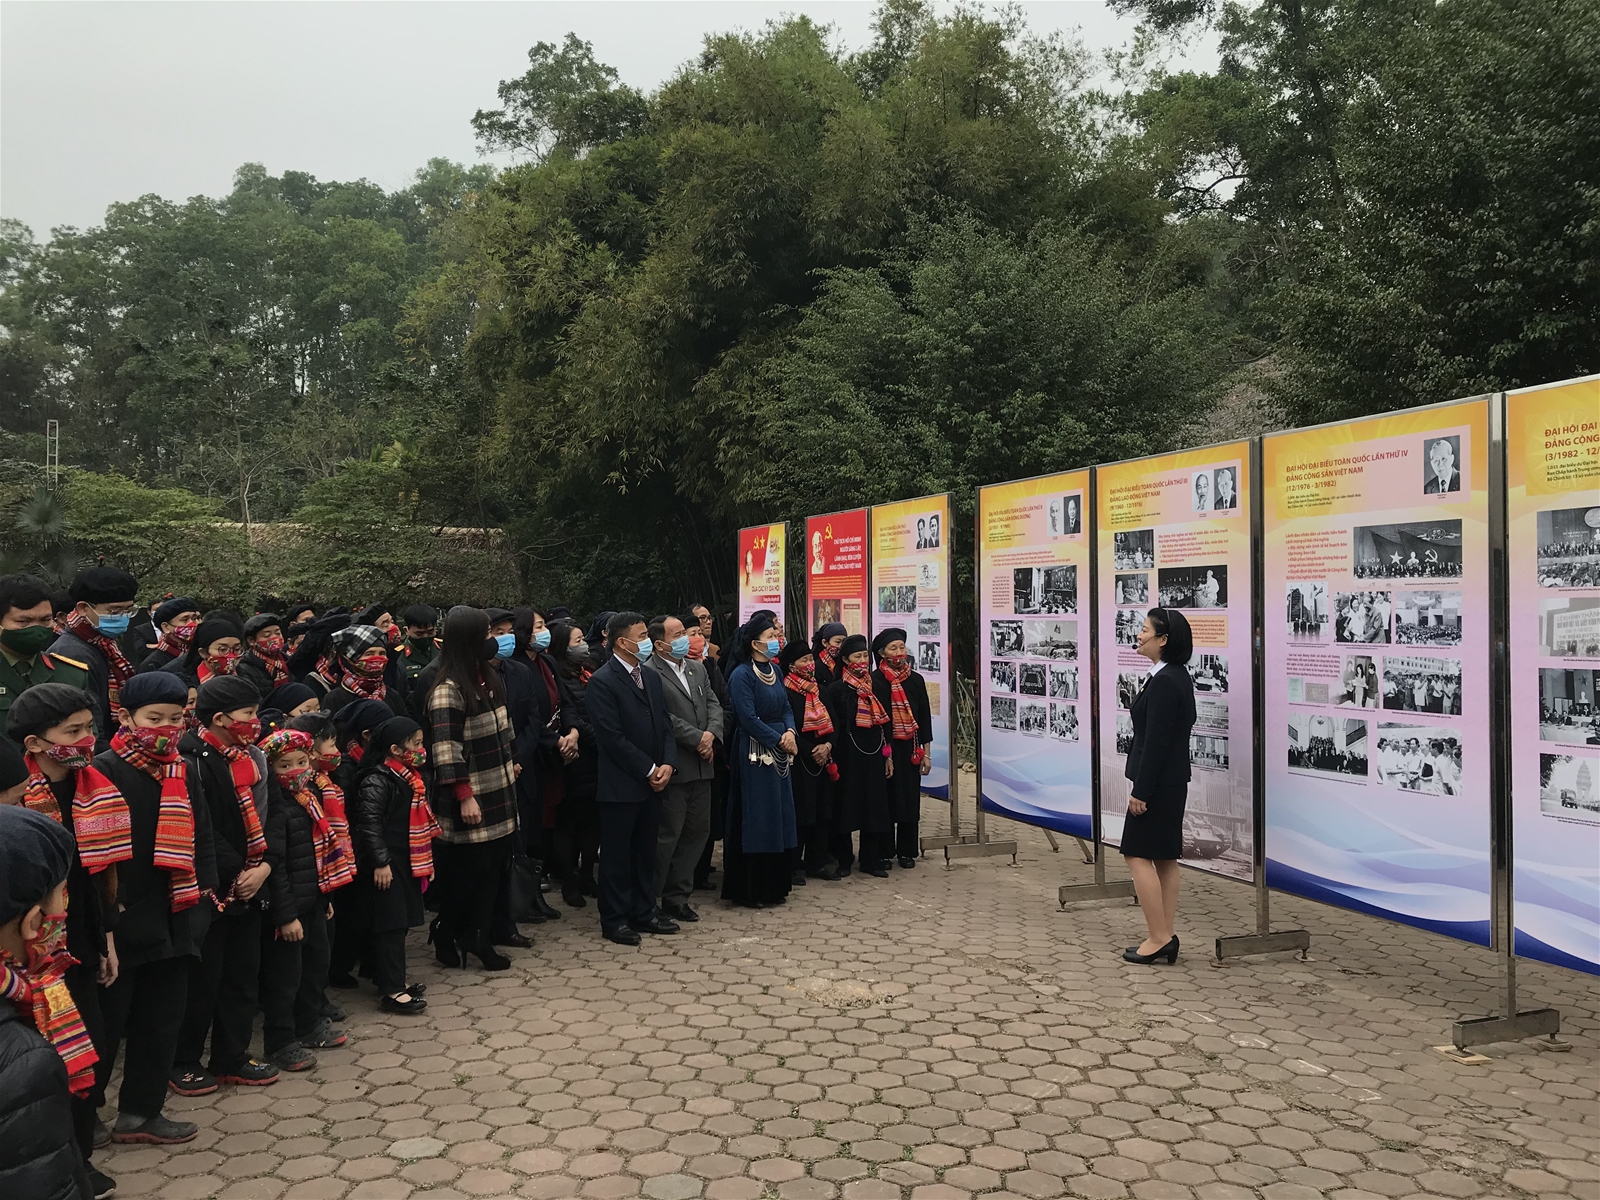 Khai mạc triển lãm chuyên đề: “Đảng Cộng sản Việt Nam qua các kỳ Đại hội” tại Khu bảo tồn Làng nhà sàn dân tộc sinh thái Thái Hải, tỉnh Thái Nguyên(ngày 30/01/2021)